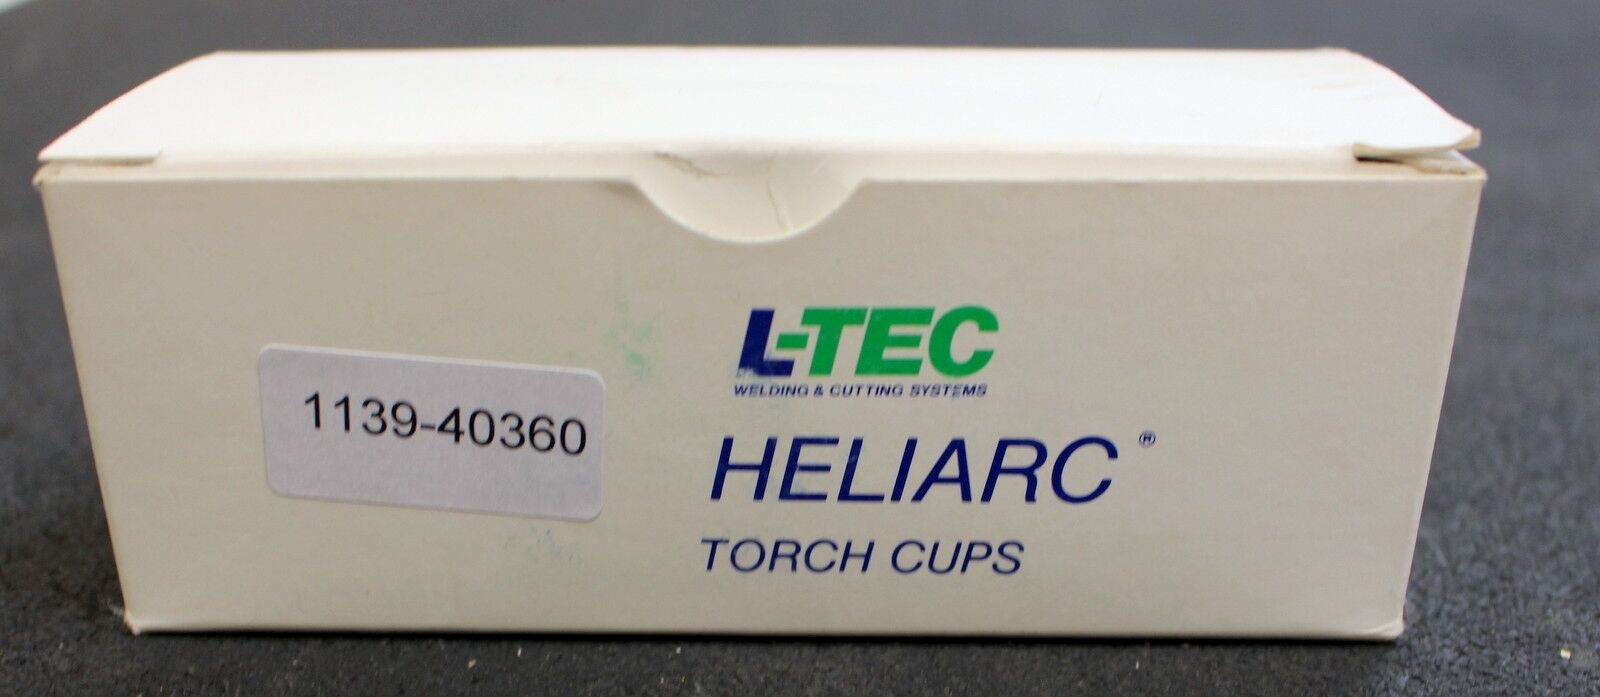 L-TECH Heliarc Torch Cups Size 8 Part.No. 54N31 Gasdüsen 10 Stück